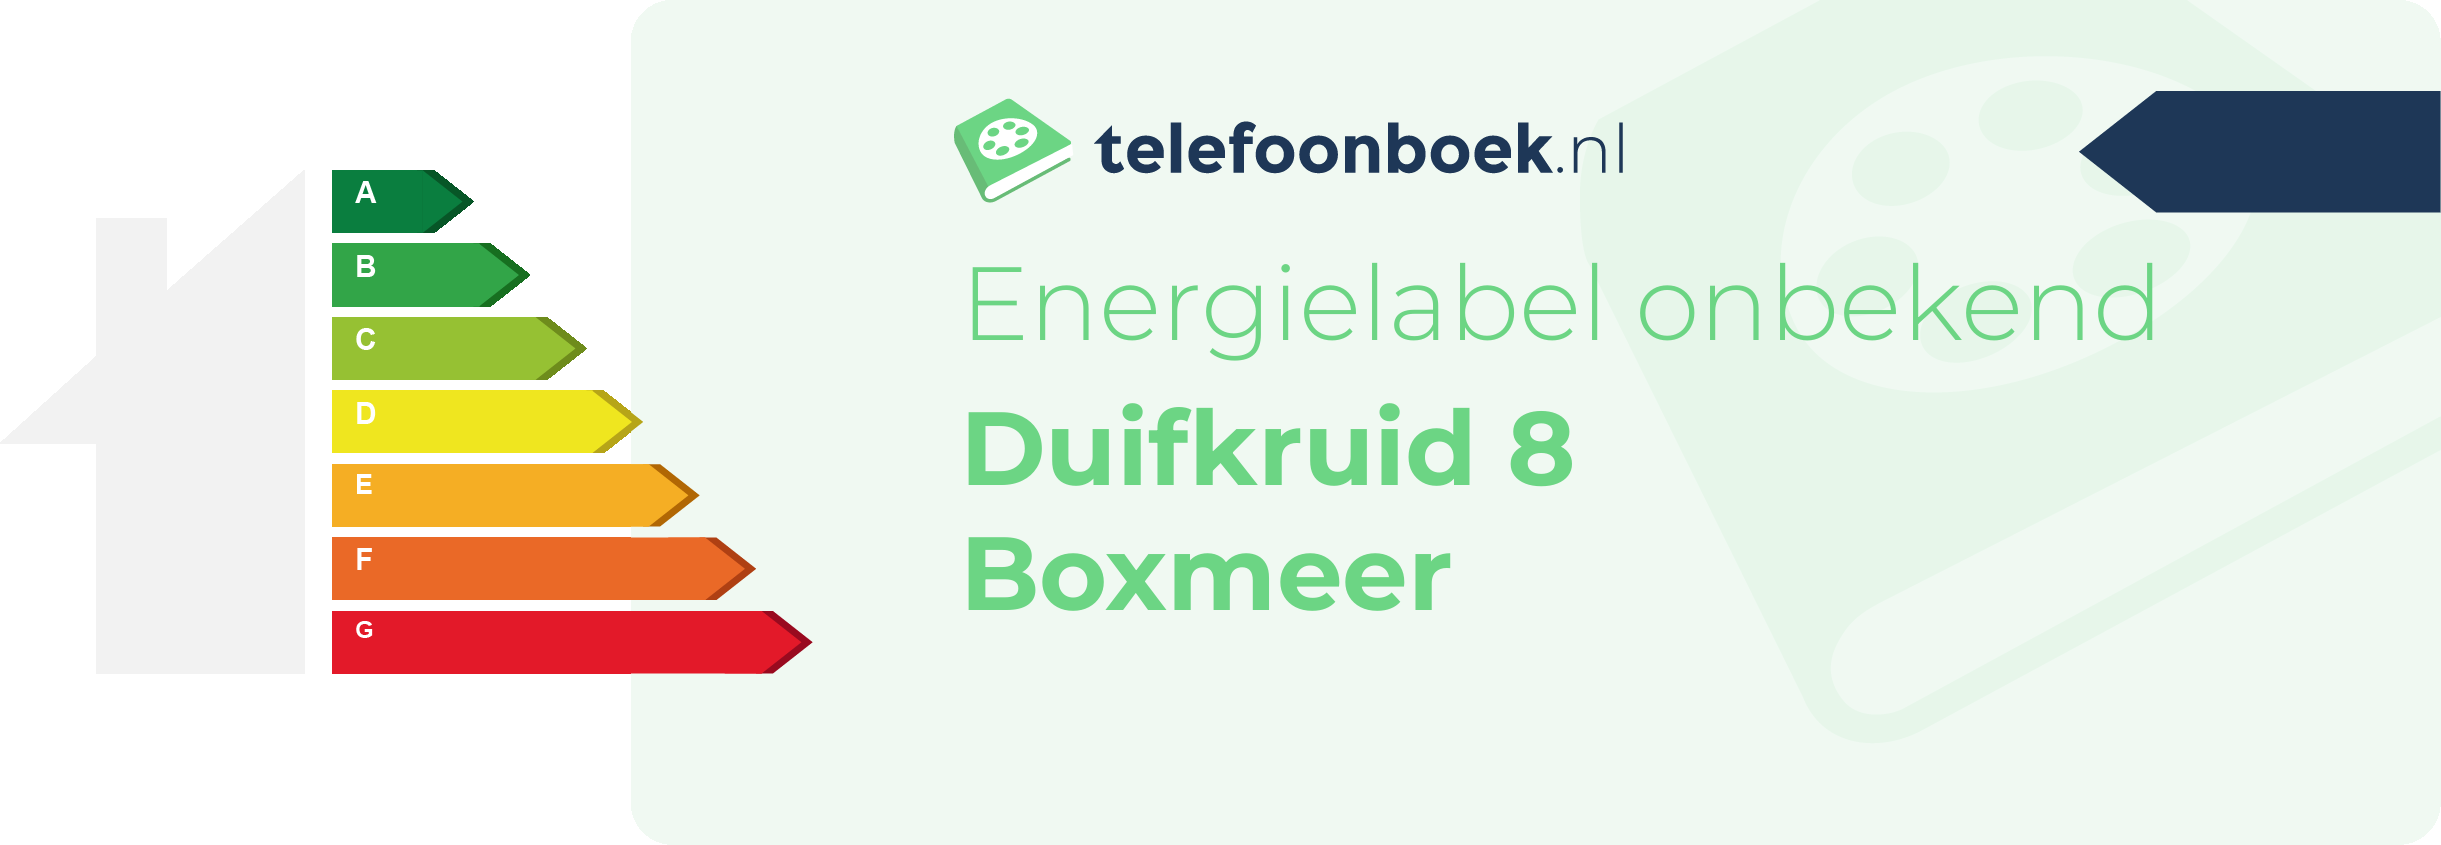 Energielabel Duifkruid 8 Boxmeer